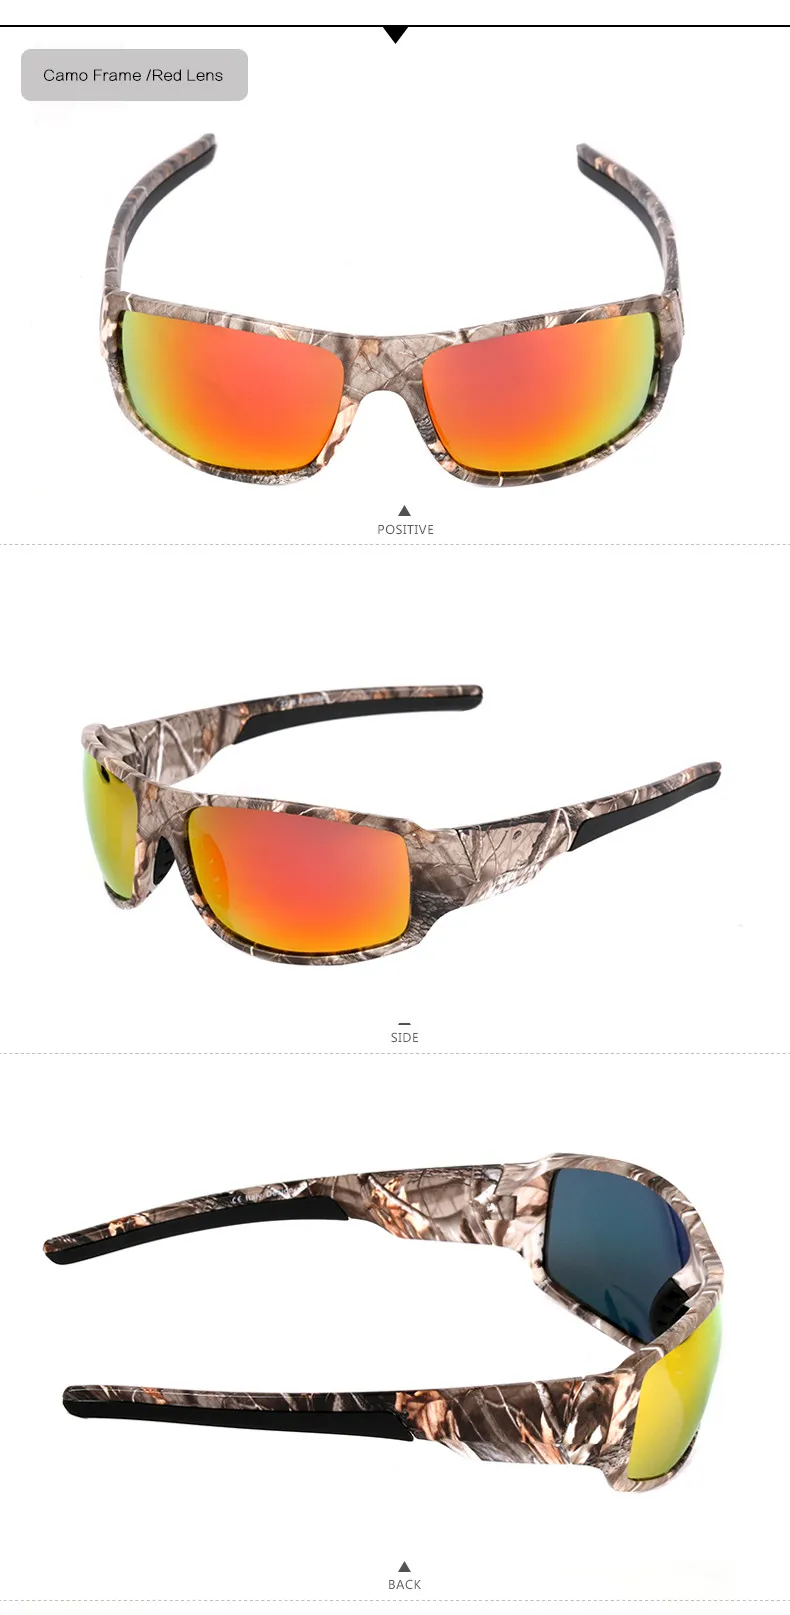 Прямая поставка, мужские камуфляжные очки в оправе, стильные поляризованные солнцезащитные очки для вождения, камуфляжные поляризационные солнцезащитные очки, защита от уф400 лучей